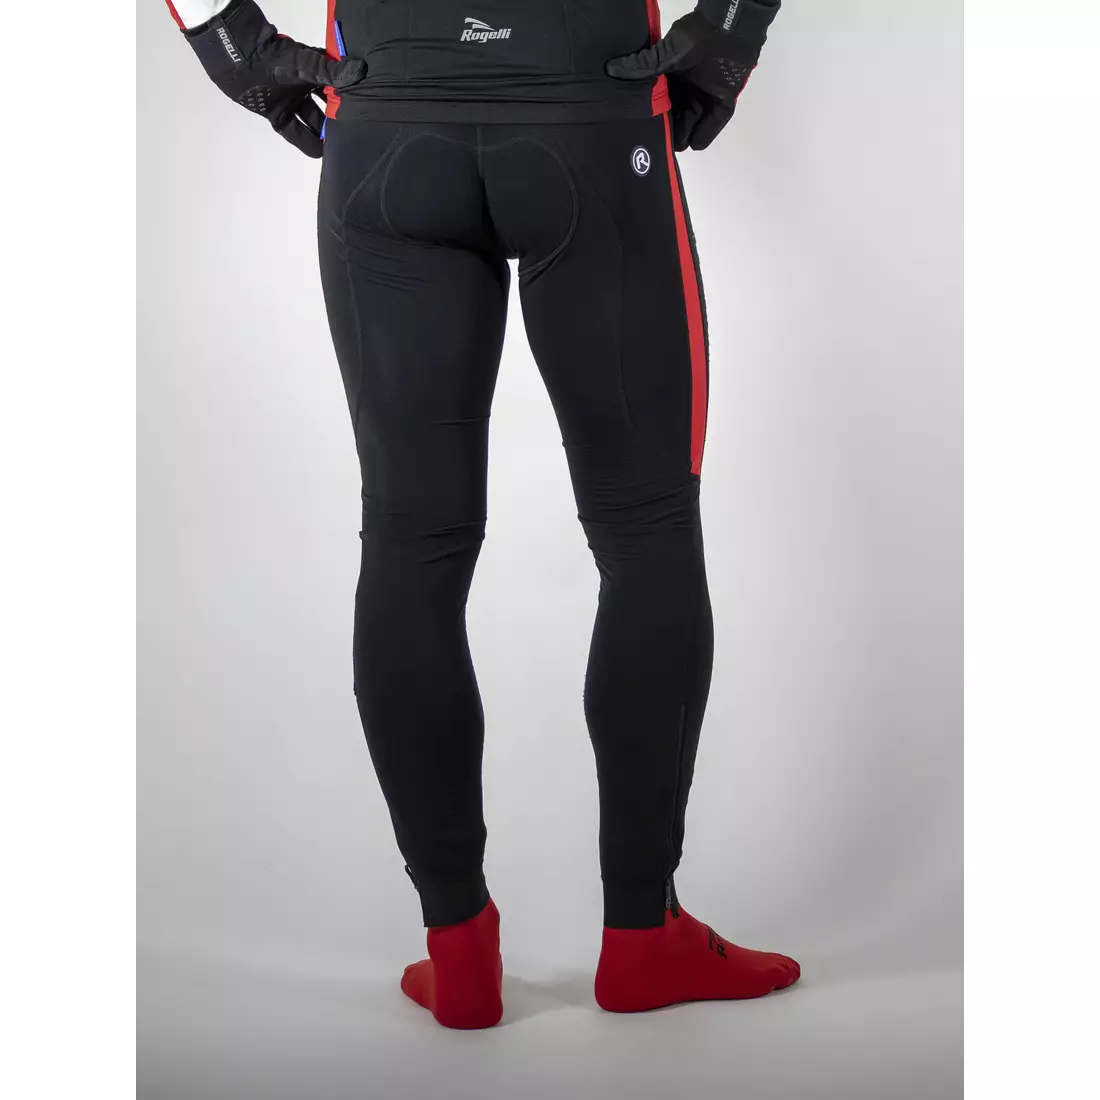 ROGELLI TRAVO 3.0 zateplené cyklistické nohavice, podväzok, čierno-červené